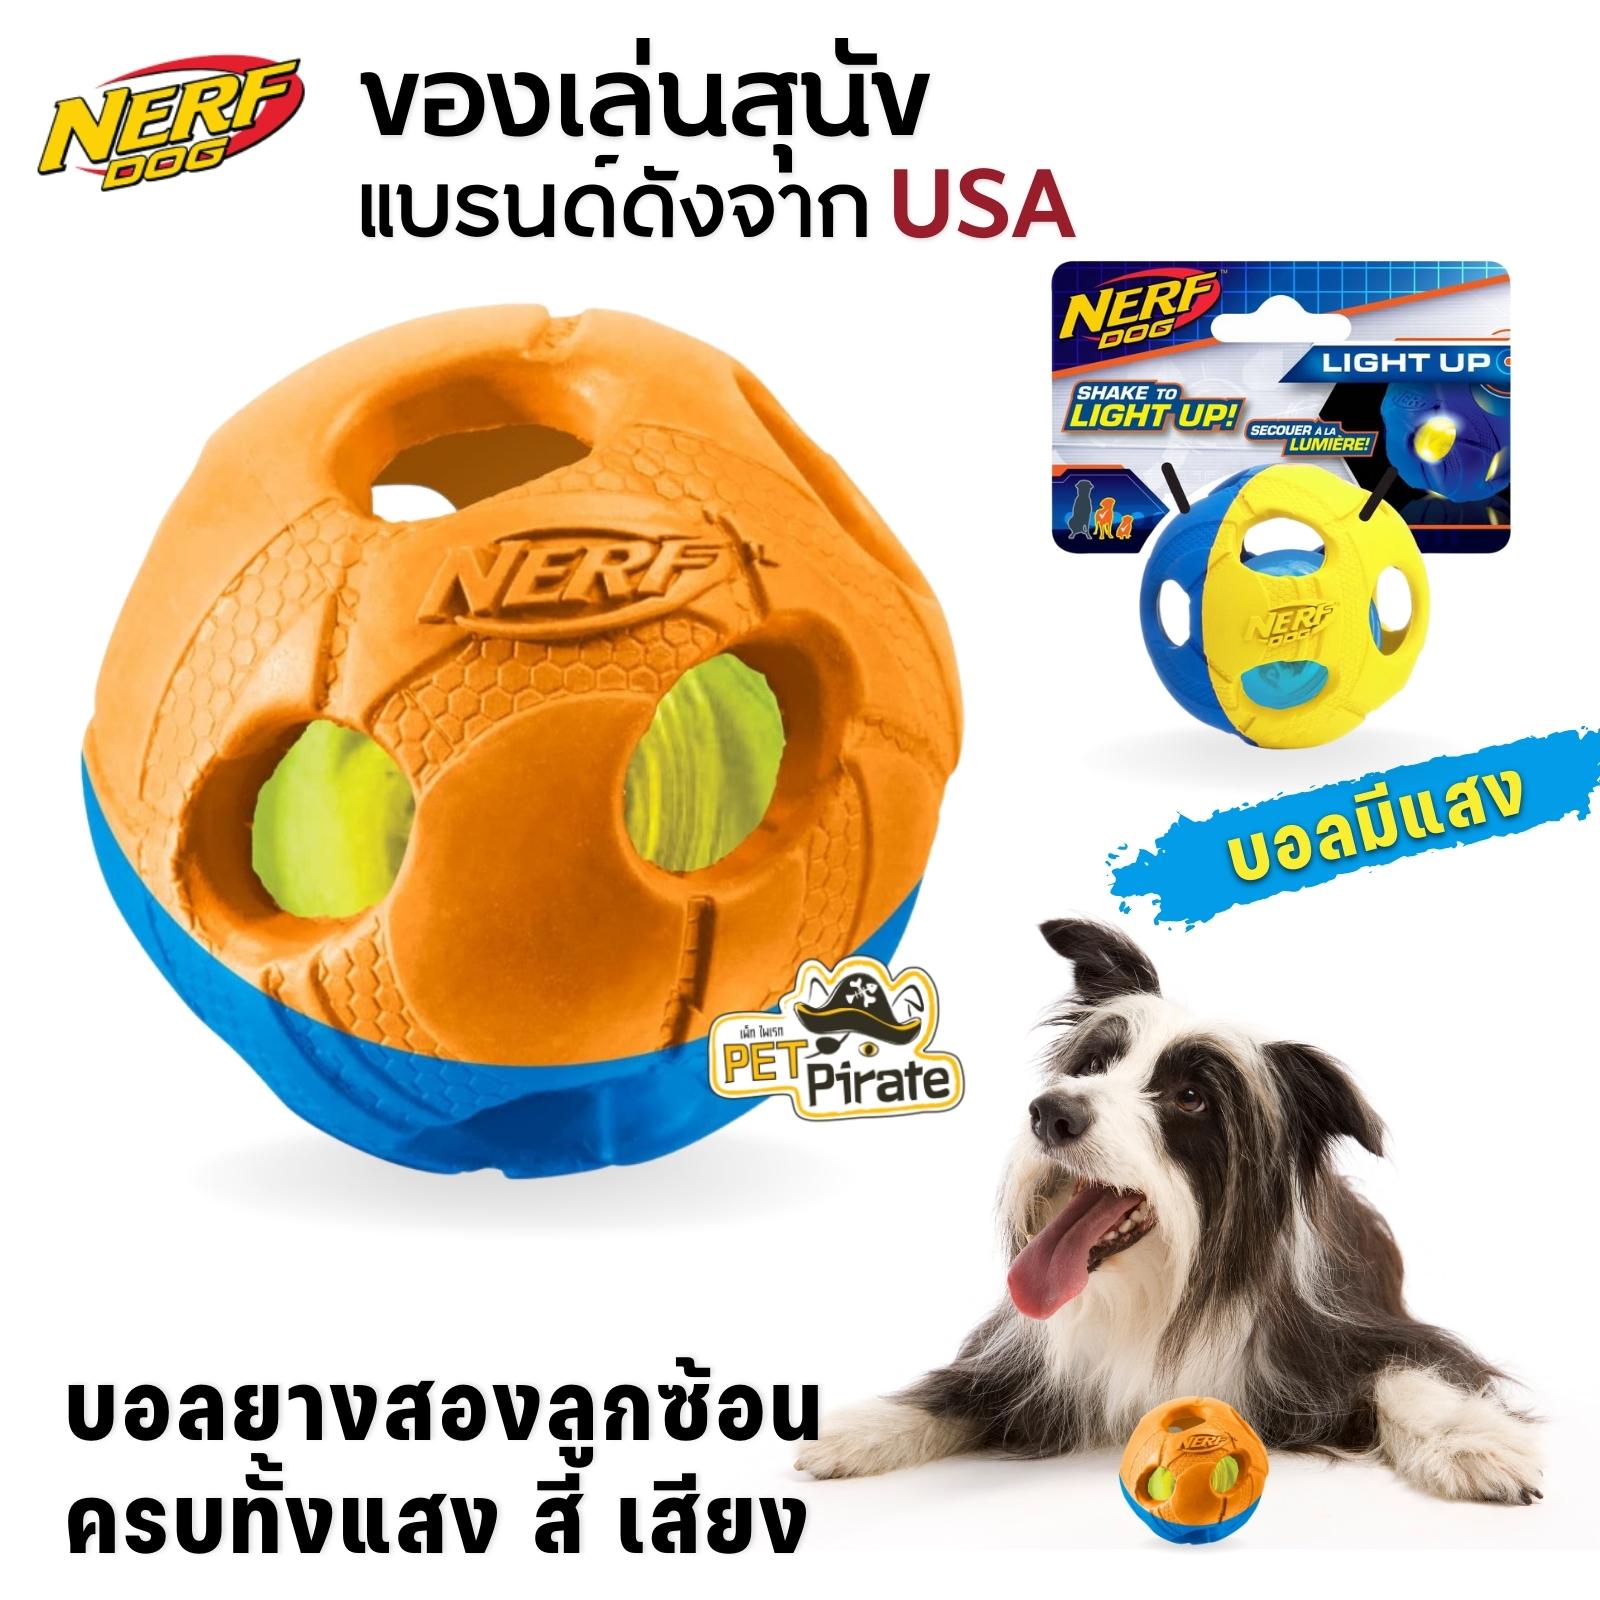 Nerf Dog LED ของเล่นสุนัข บอลยางสองลูกซ้อน ครบทั้งแสง สี เสียง คุ้ม สนุกอย่างสร้างสรรค์กับของเล่นสุนัขแบรนด์ดังจาก USA